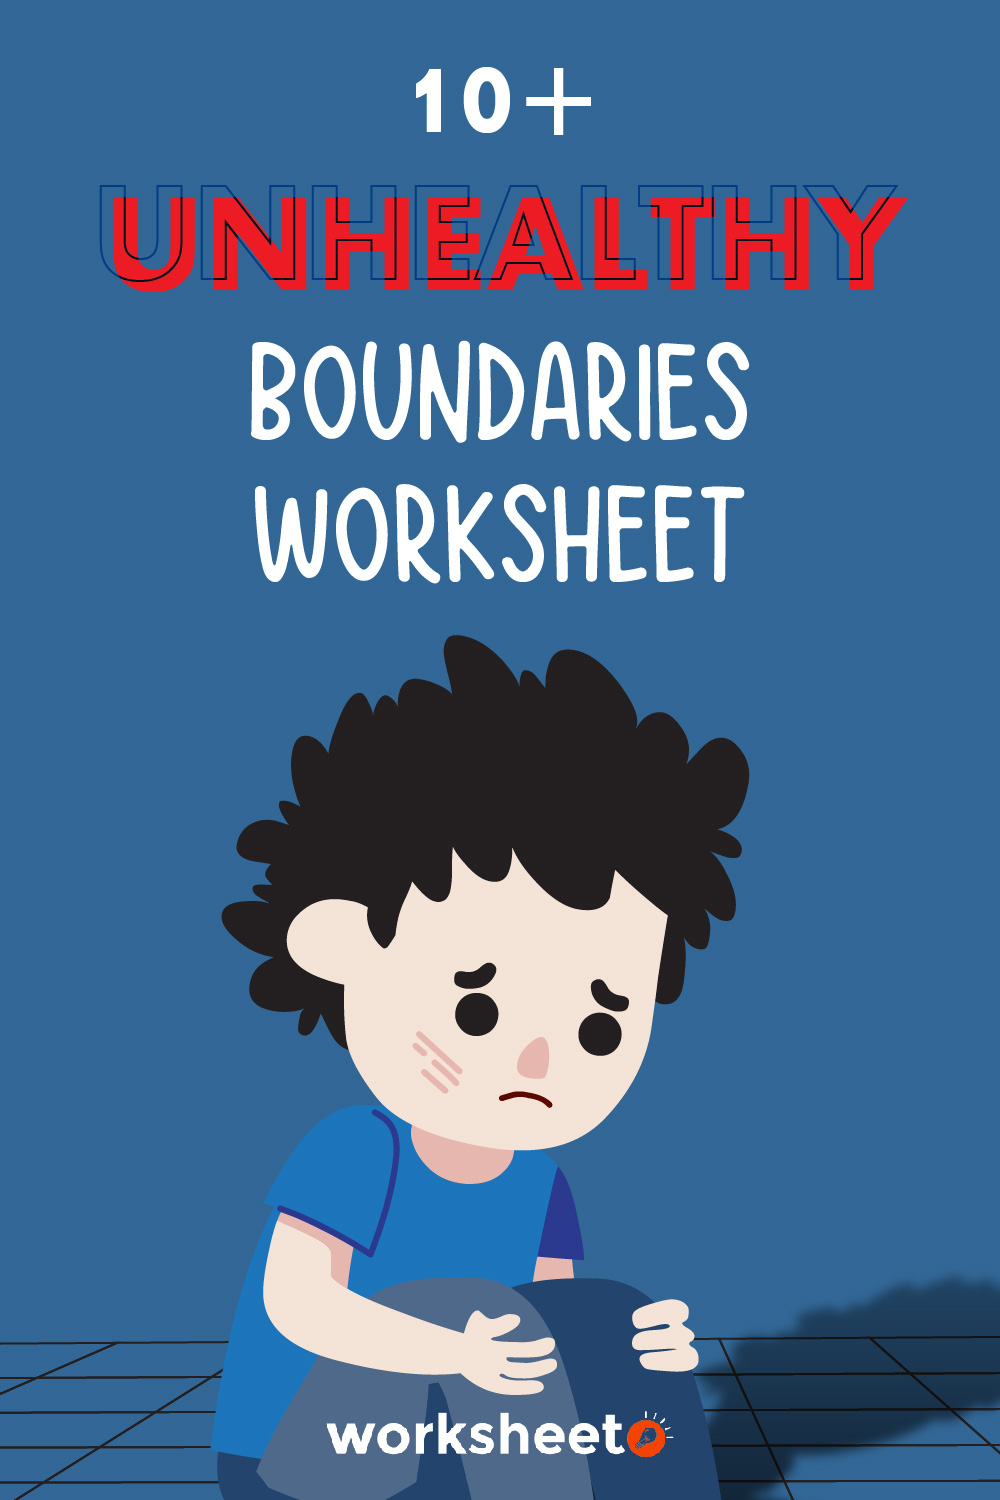 19 Images of Unhealthy Boundaries Worksheet